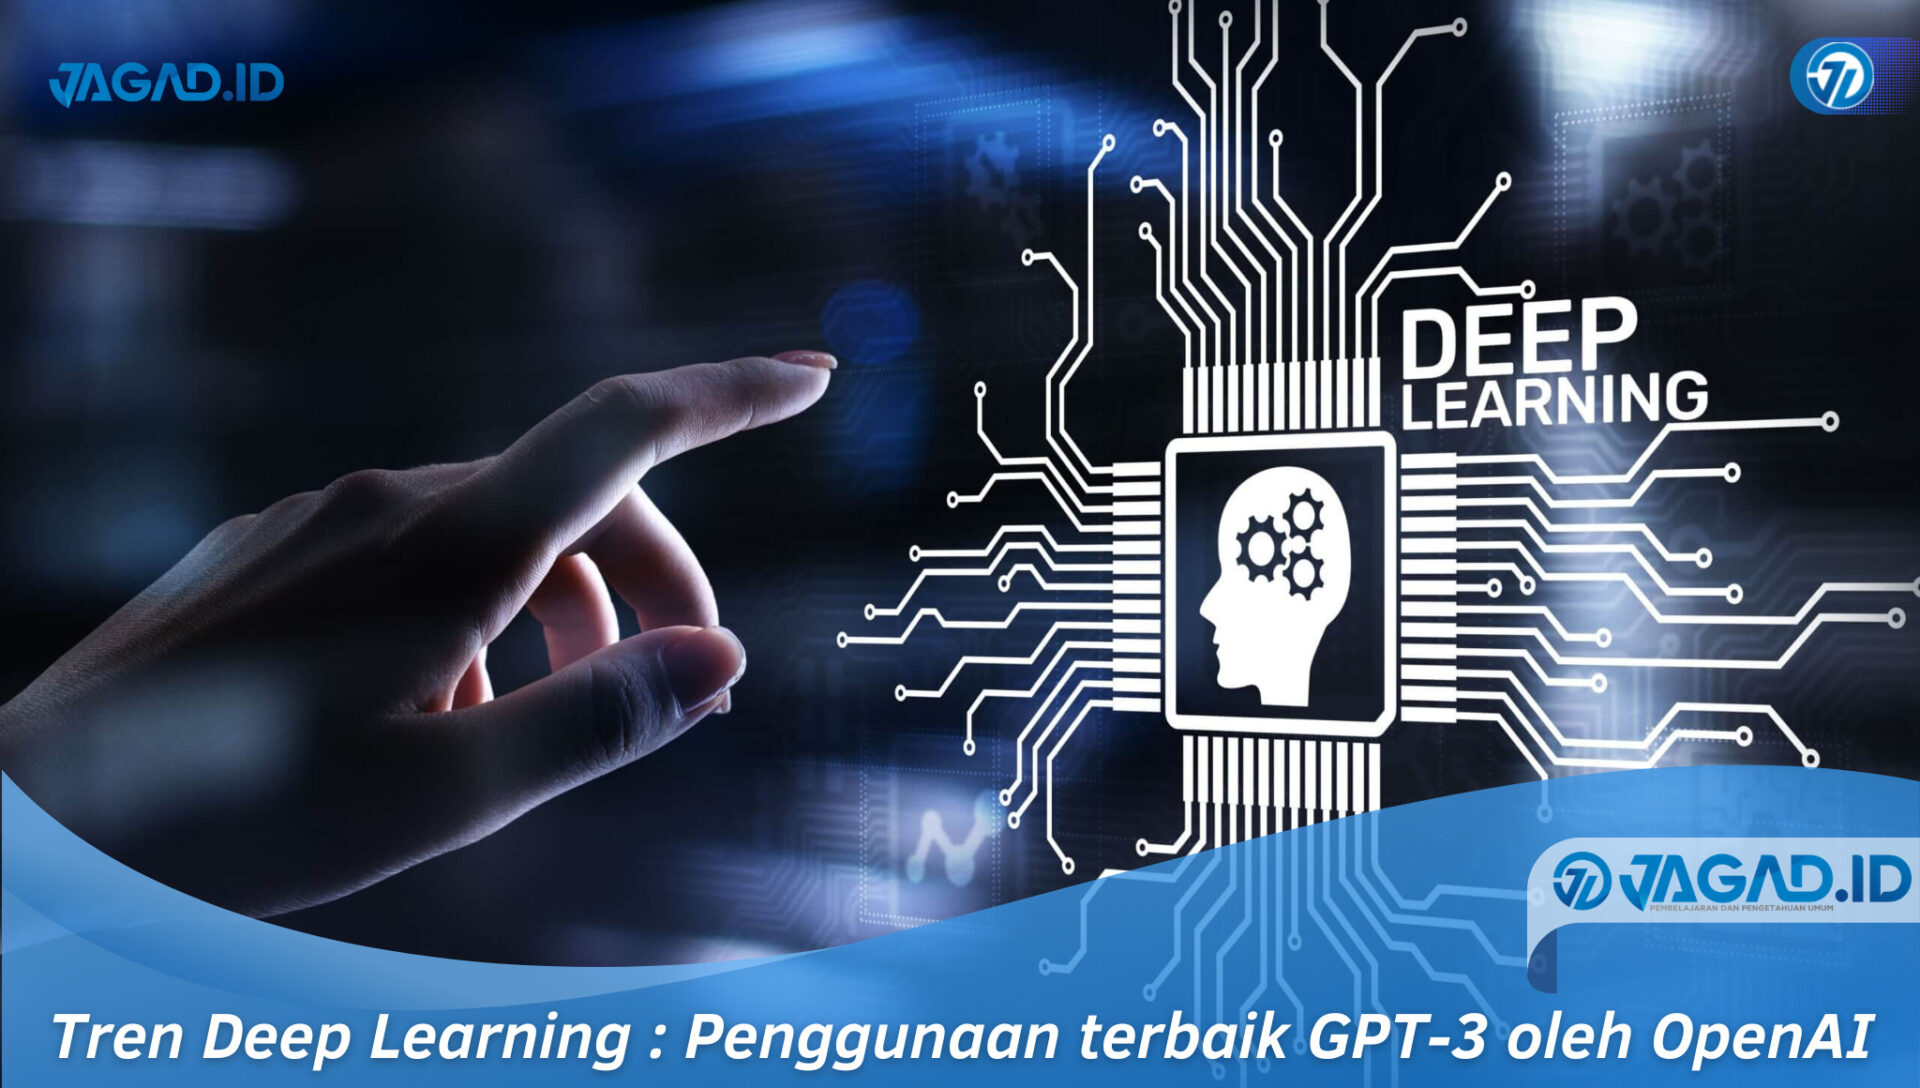 Tren Deep Learning Penggunaan terbaik GPT-3 oleh OpenAI